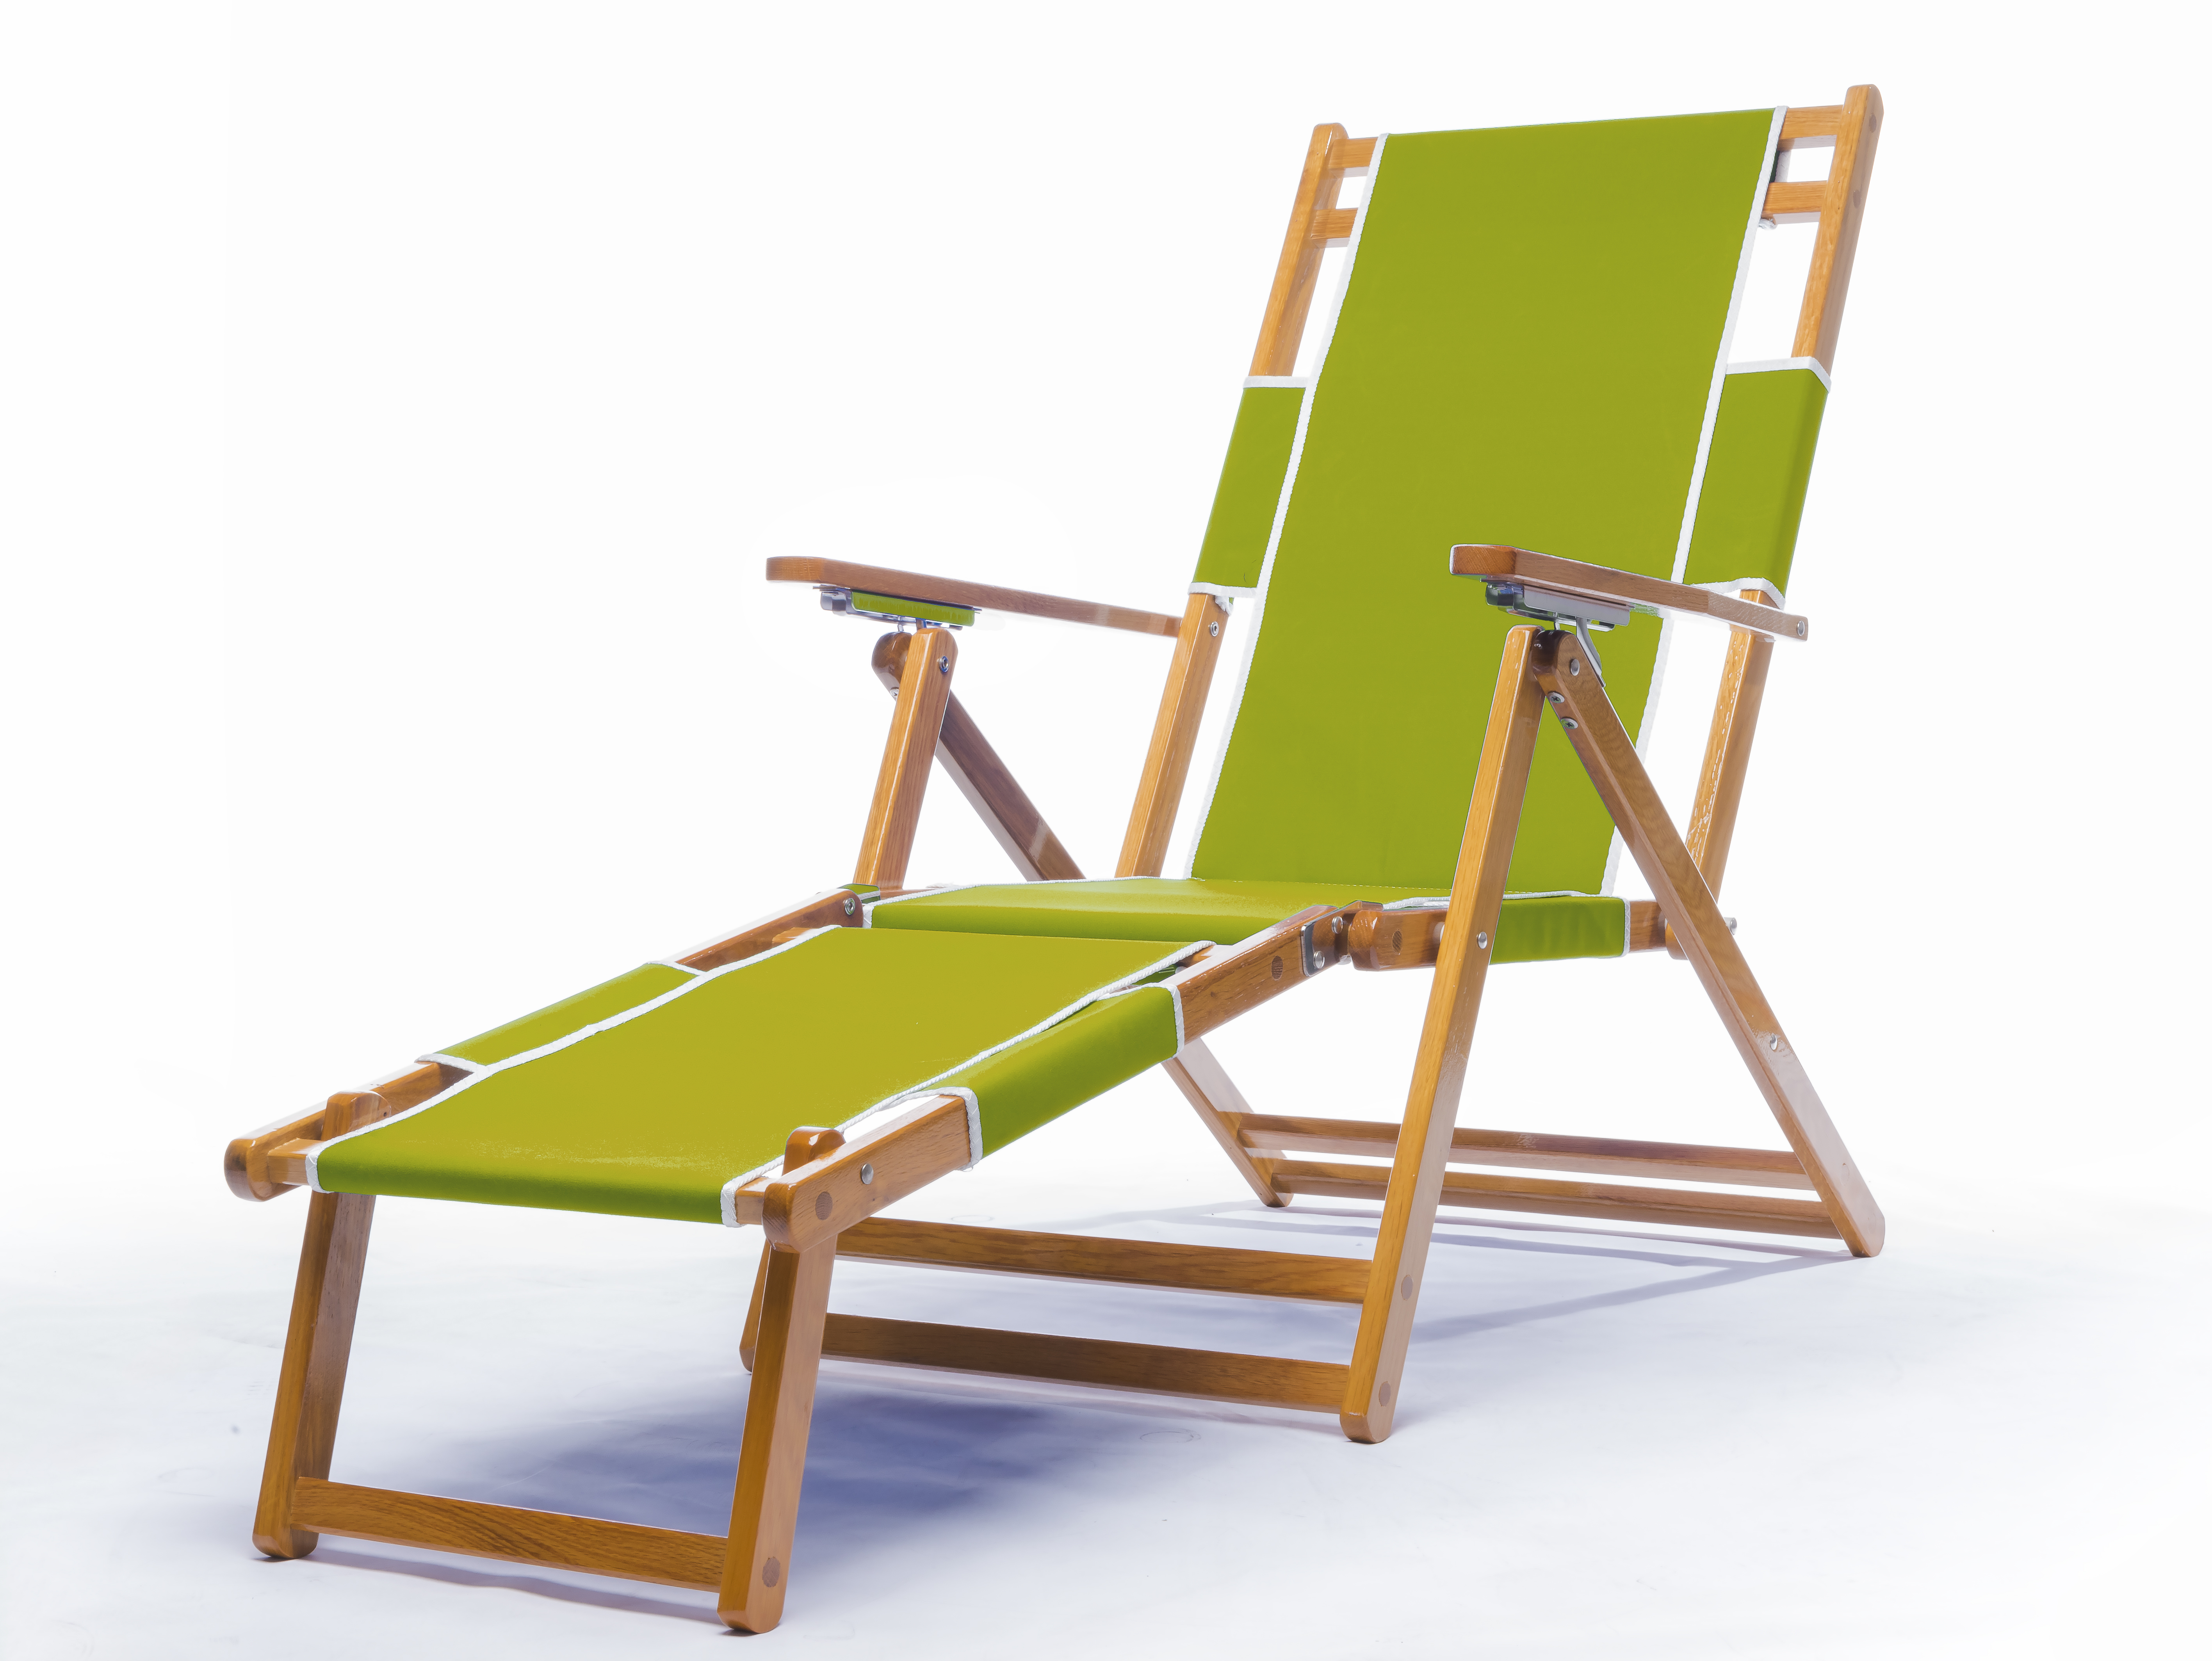 Beach Chair
Pistachio
$189.00
